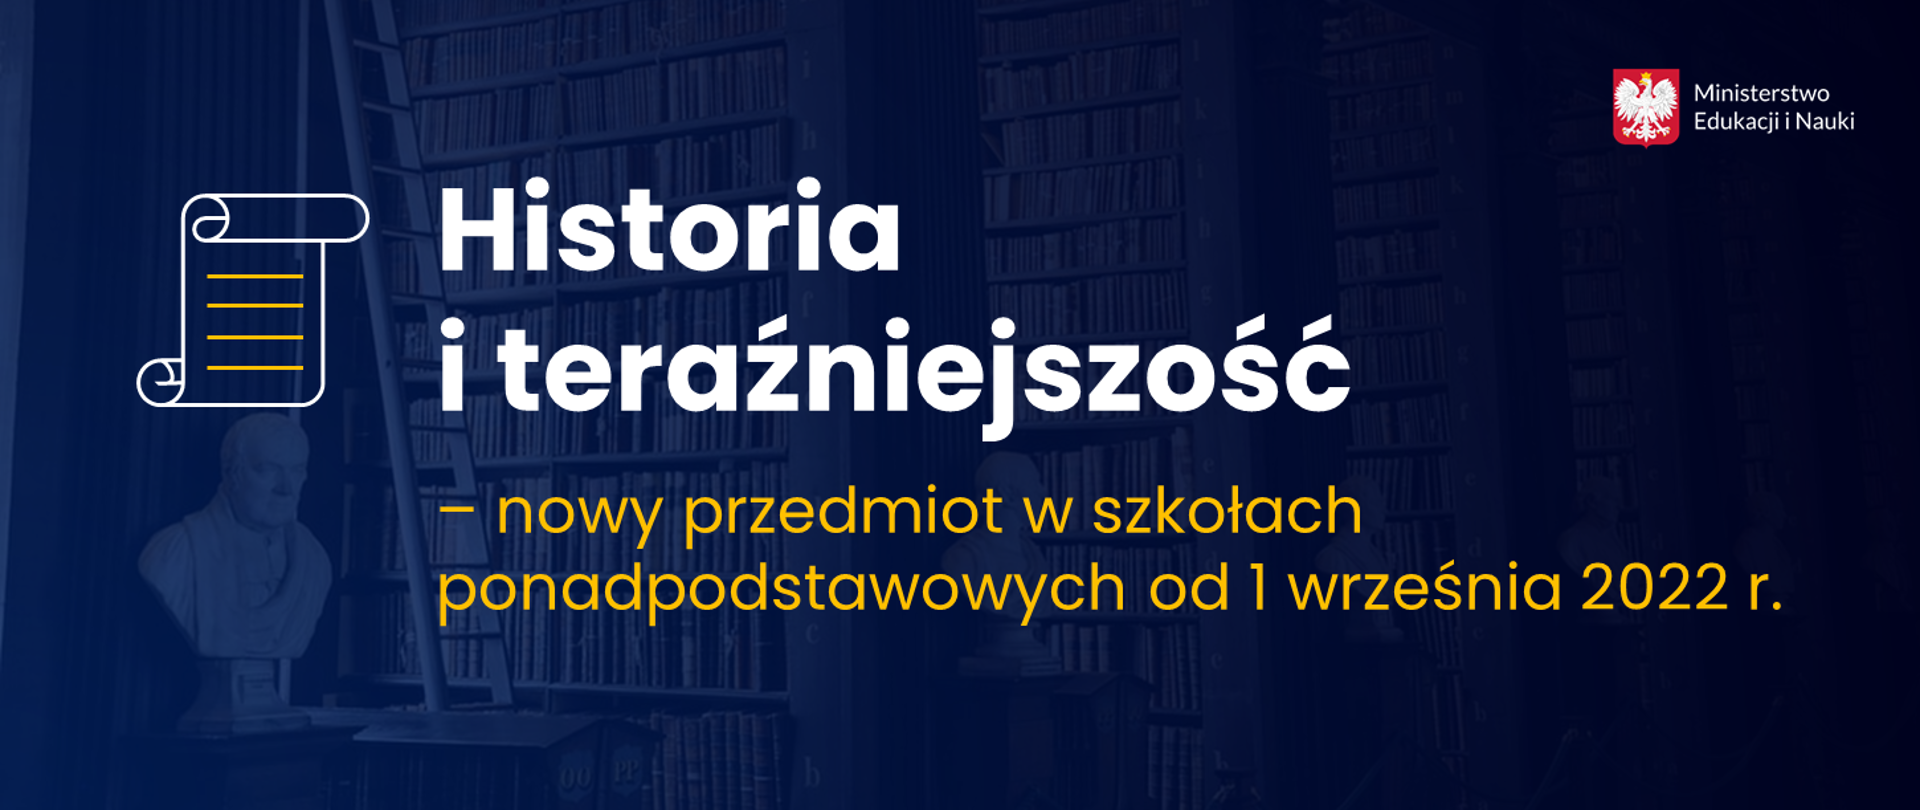 Grafika z tekstem: Historia i teraźniejszość – nowy przedmiot w szkołach ponadpodstawowych od 1 września 2022 r.